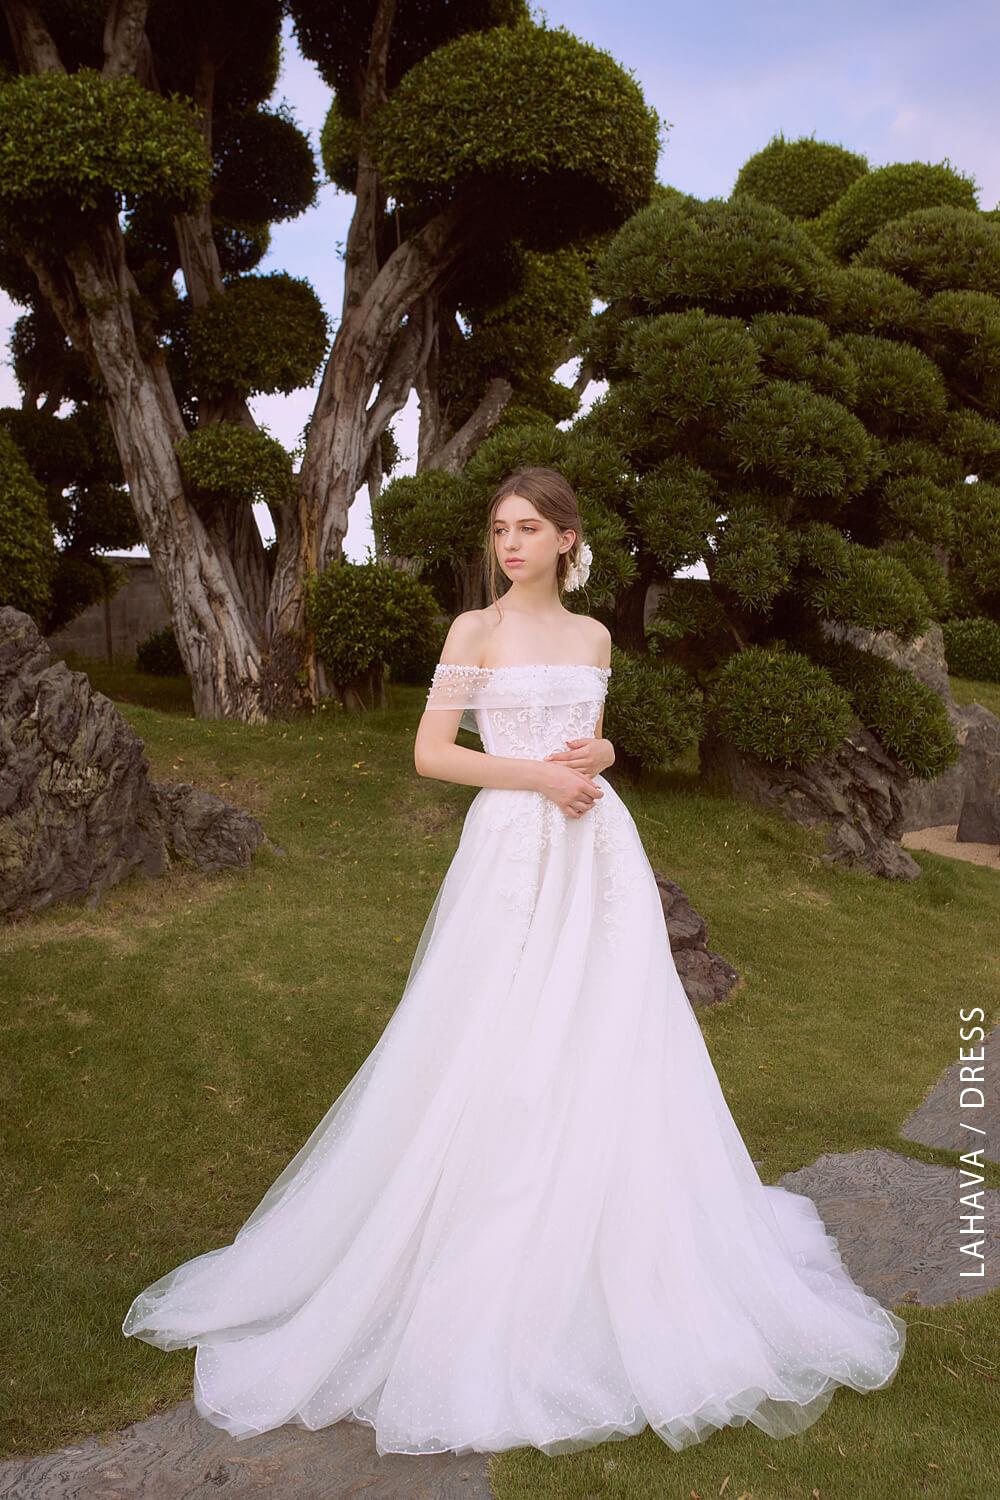 Toàn cảnh hot girl Xoài Non nhận váy cưới của tại Linh Nga Bridal - VÁY CƯỚI  CAO CẤP LINH NGA BRIDAL